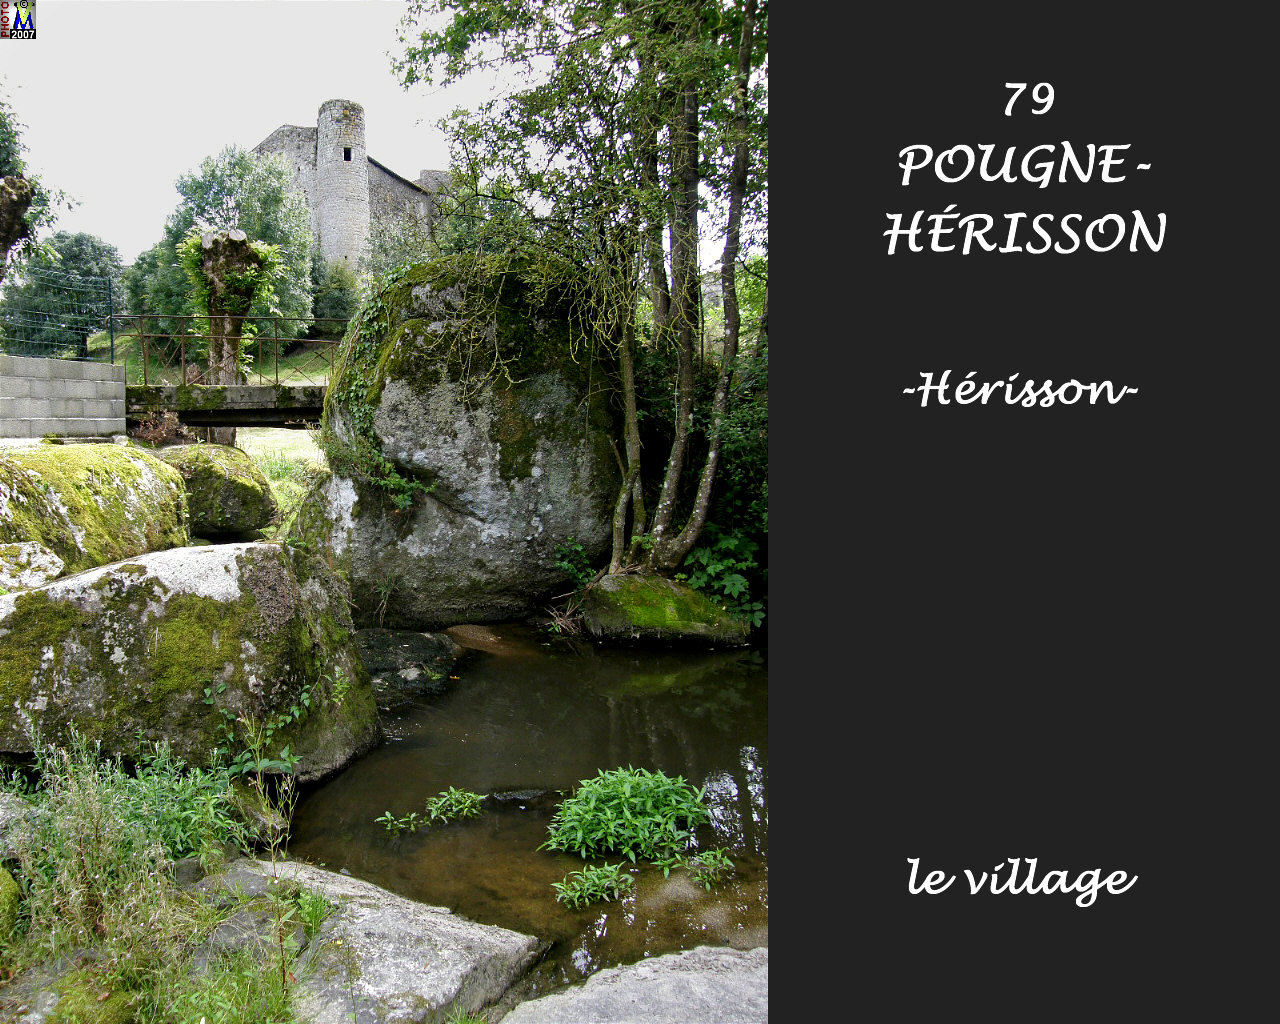 79POUGNE-HERISSON_herisson_village_122.jpg